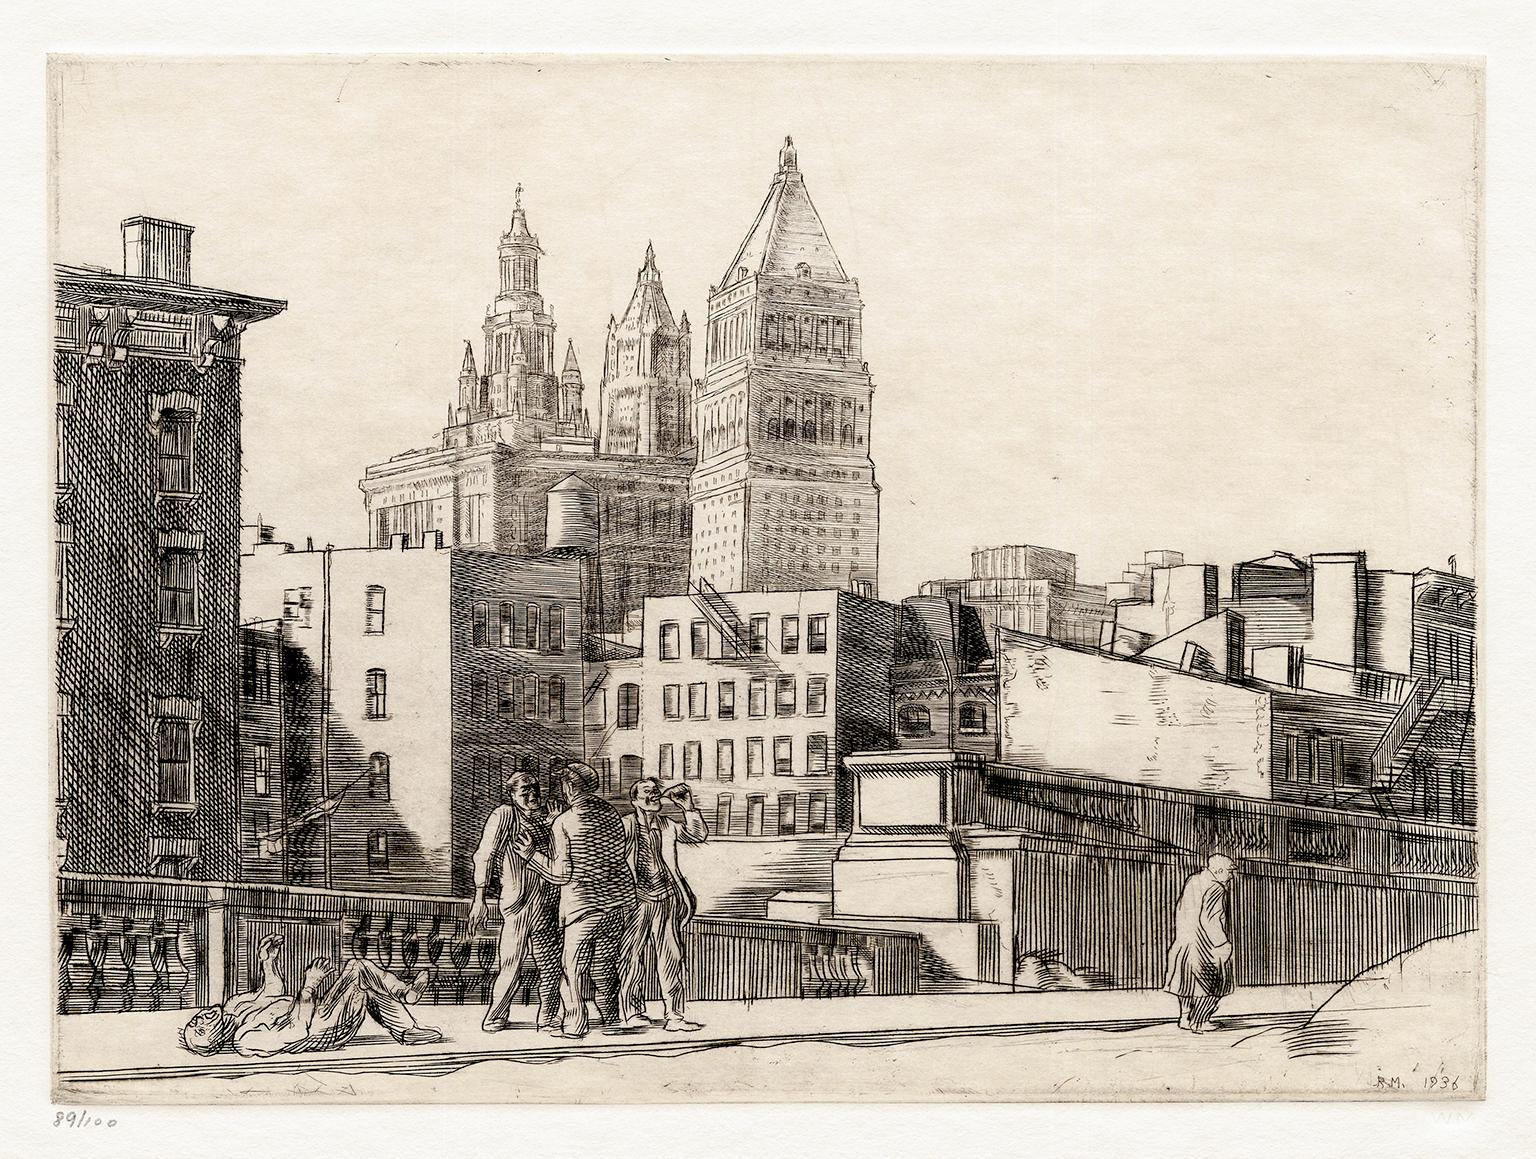 Ein Morgen im Mai" - Sozialer Realismus der 1930er Jahre, New York City